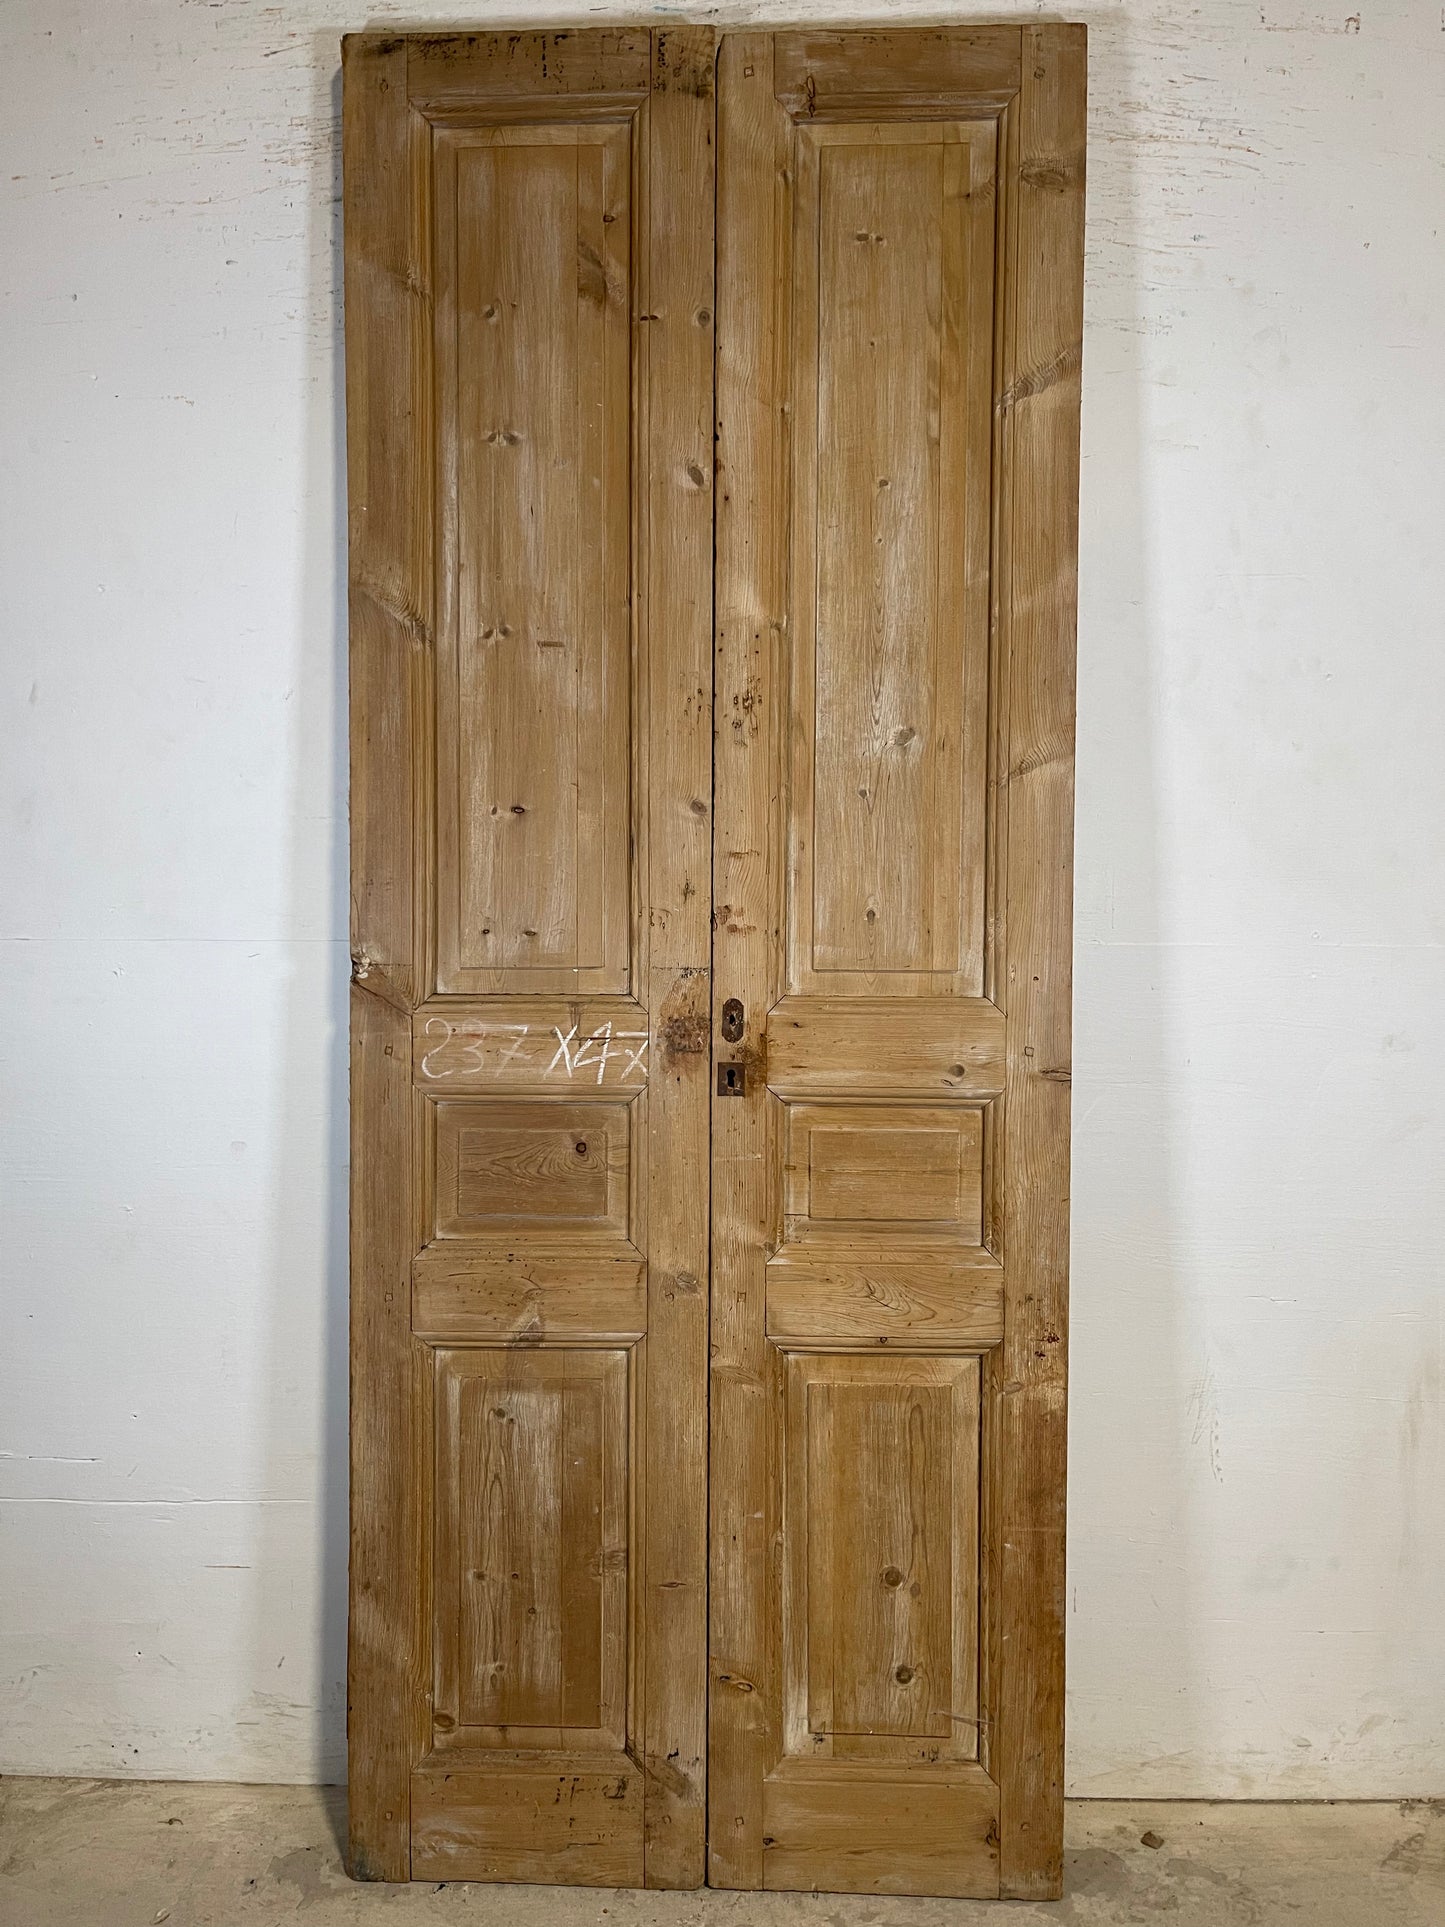 Antique French panel Doors (95.5x39.25) K708